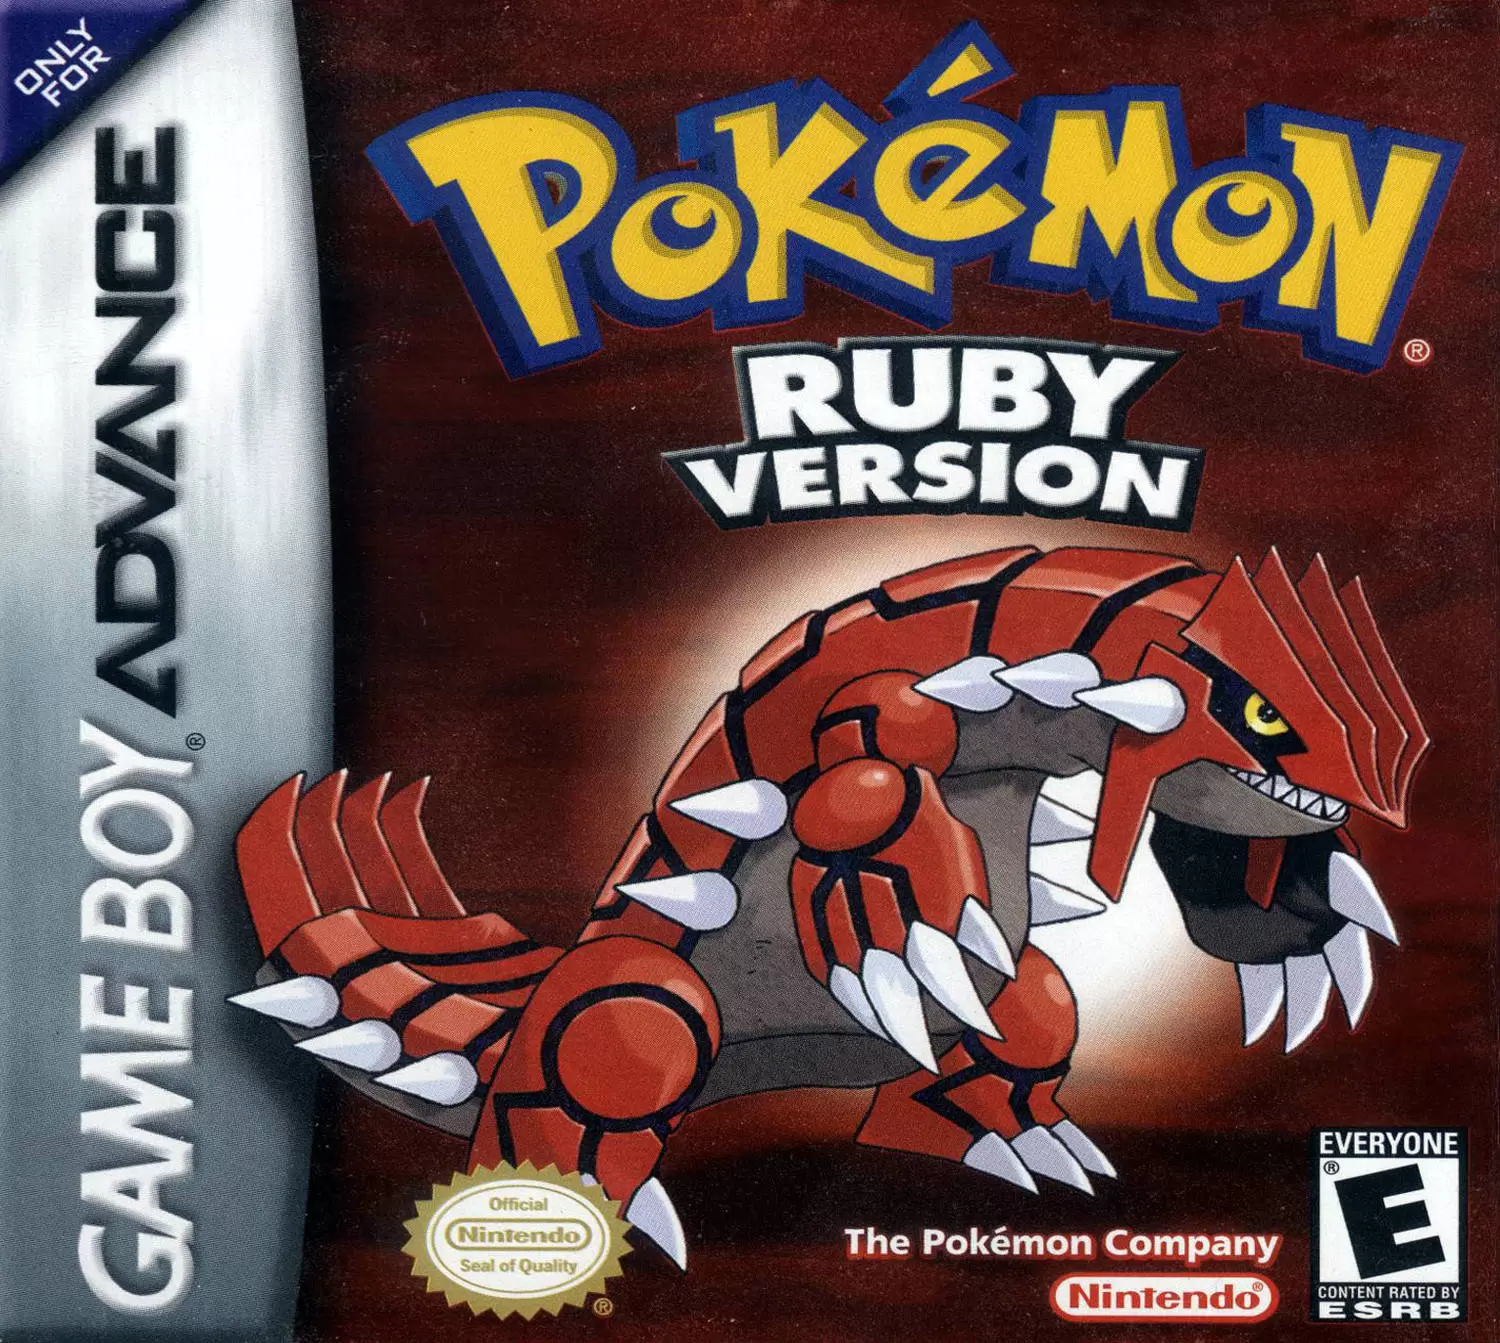 Game Boy Advance Games - Pokémon Ruby Version